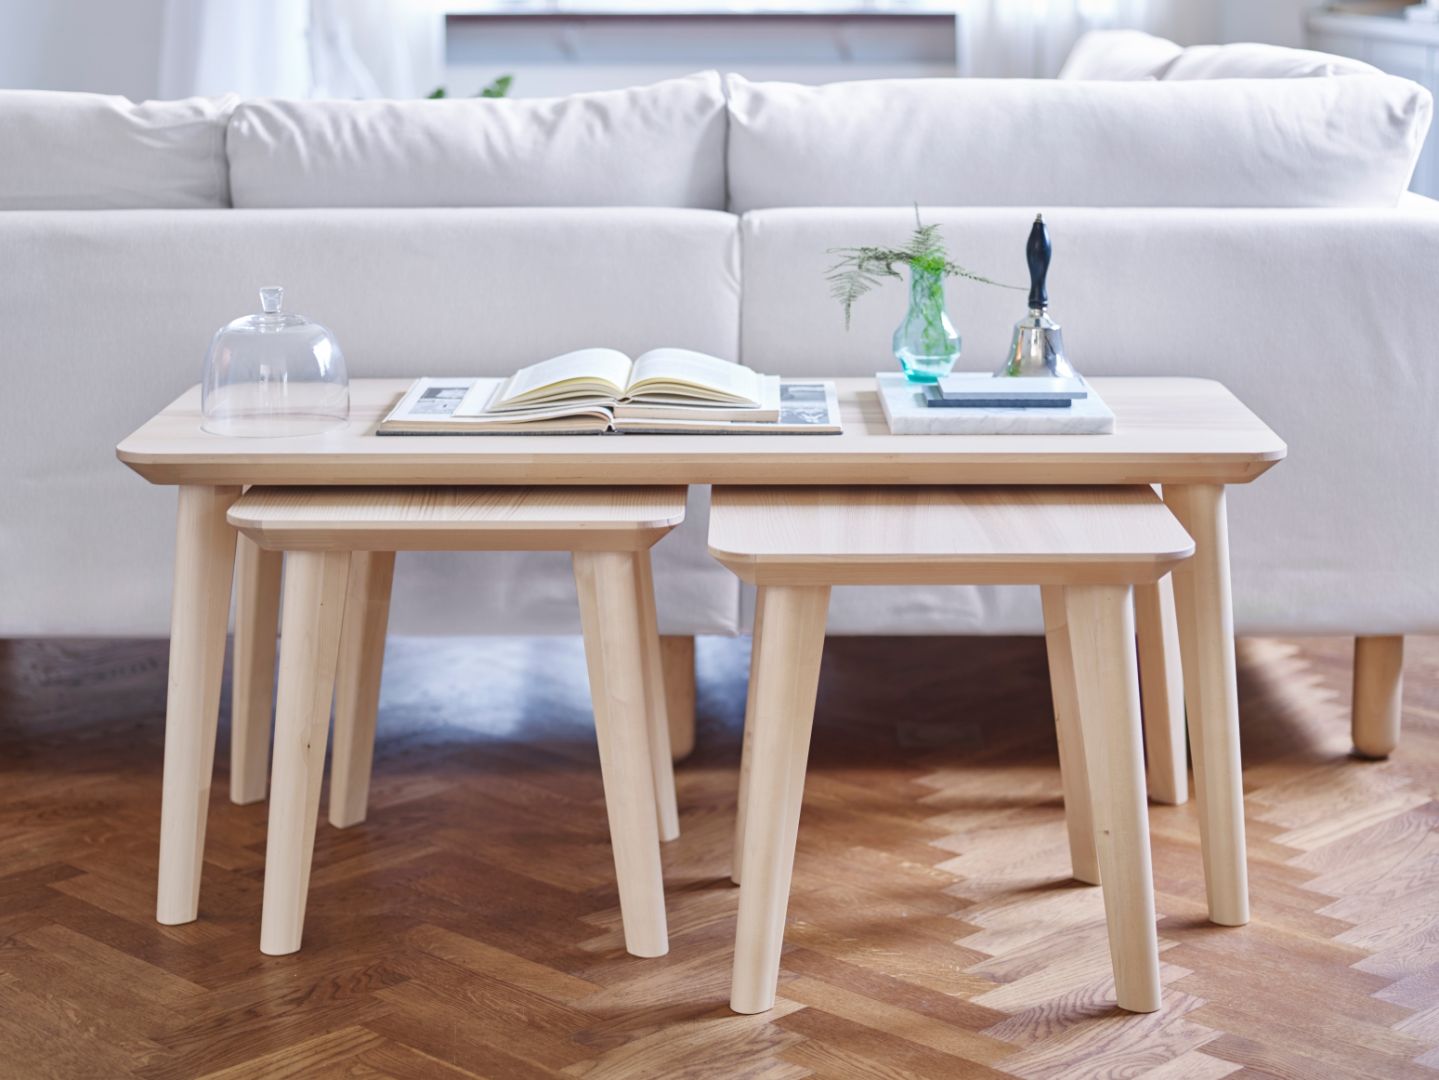 Ława z kolekcji Lisabo i stołki, które w razie potrzebu mogą być użyte jako stolik dodatkowe lub wygodne miejsce do siedzenia. Fot. IKEA